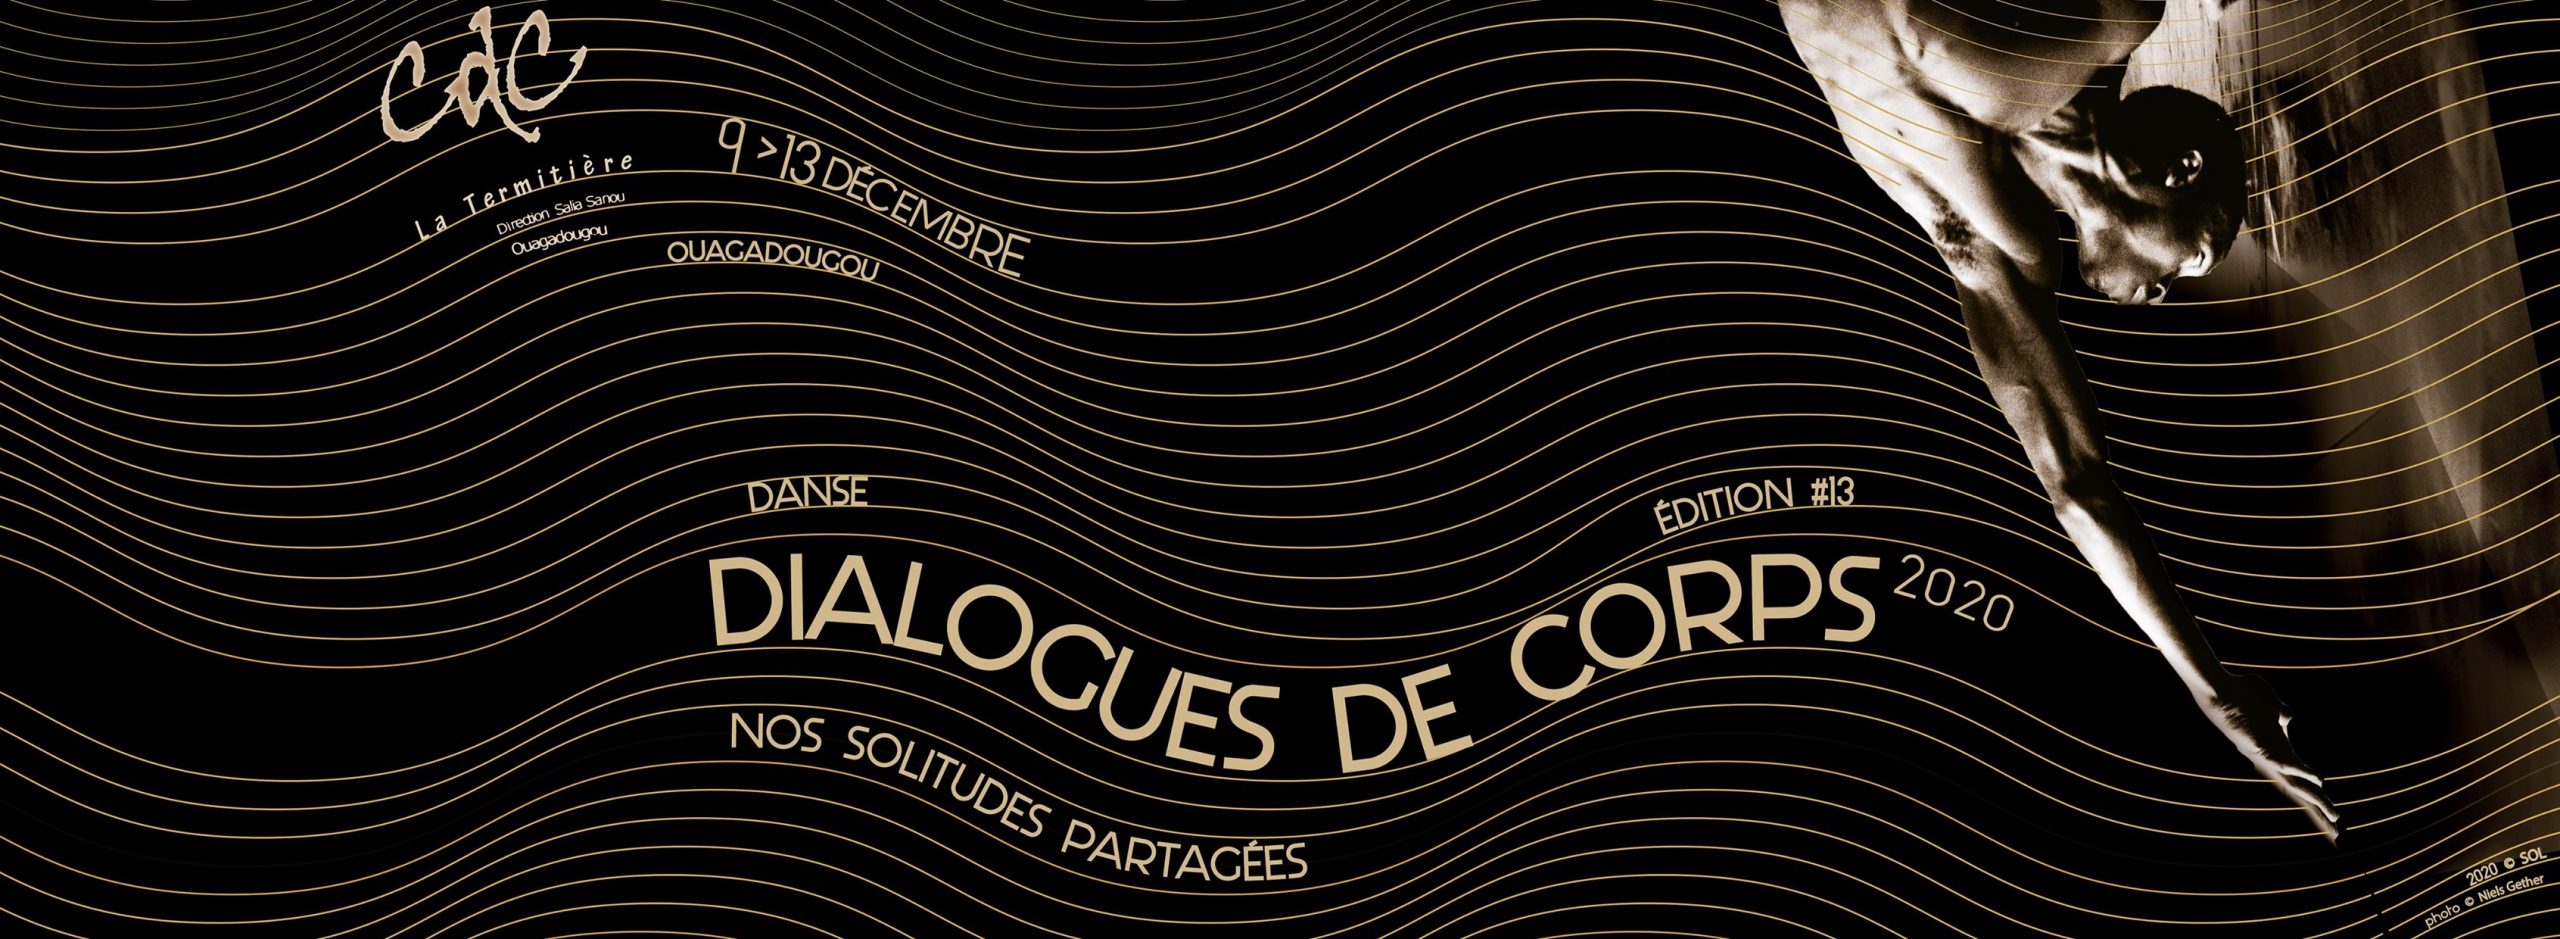 Festival Dialogues de corps 2020 : « Nos solitudes partagées »